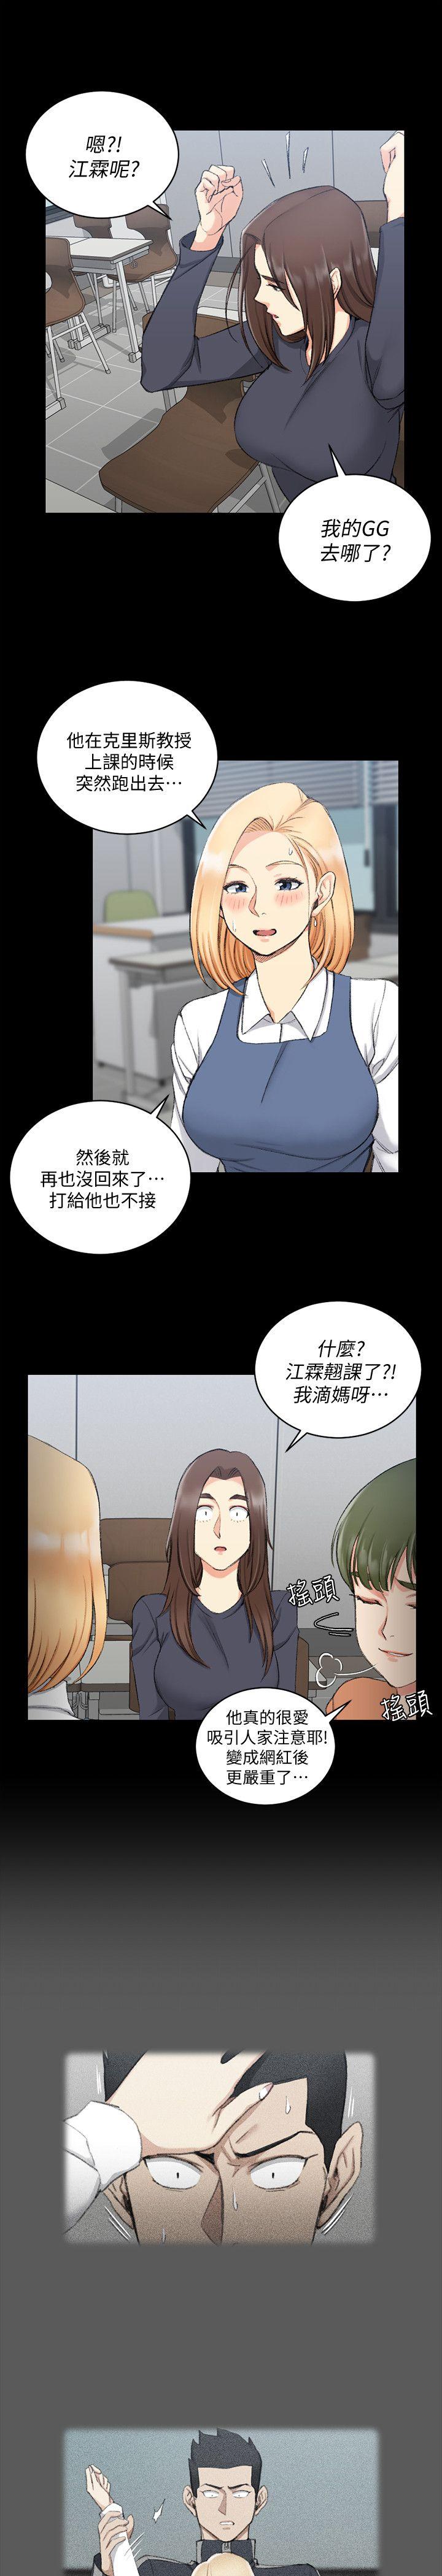 《淫新小套房》漫画 第52话 淫娃上身的管理员阿姨[02]